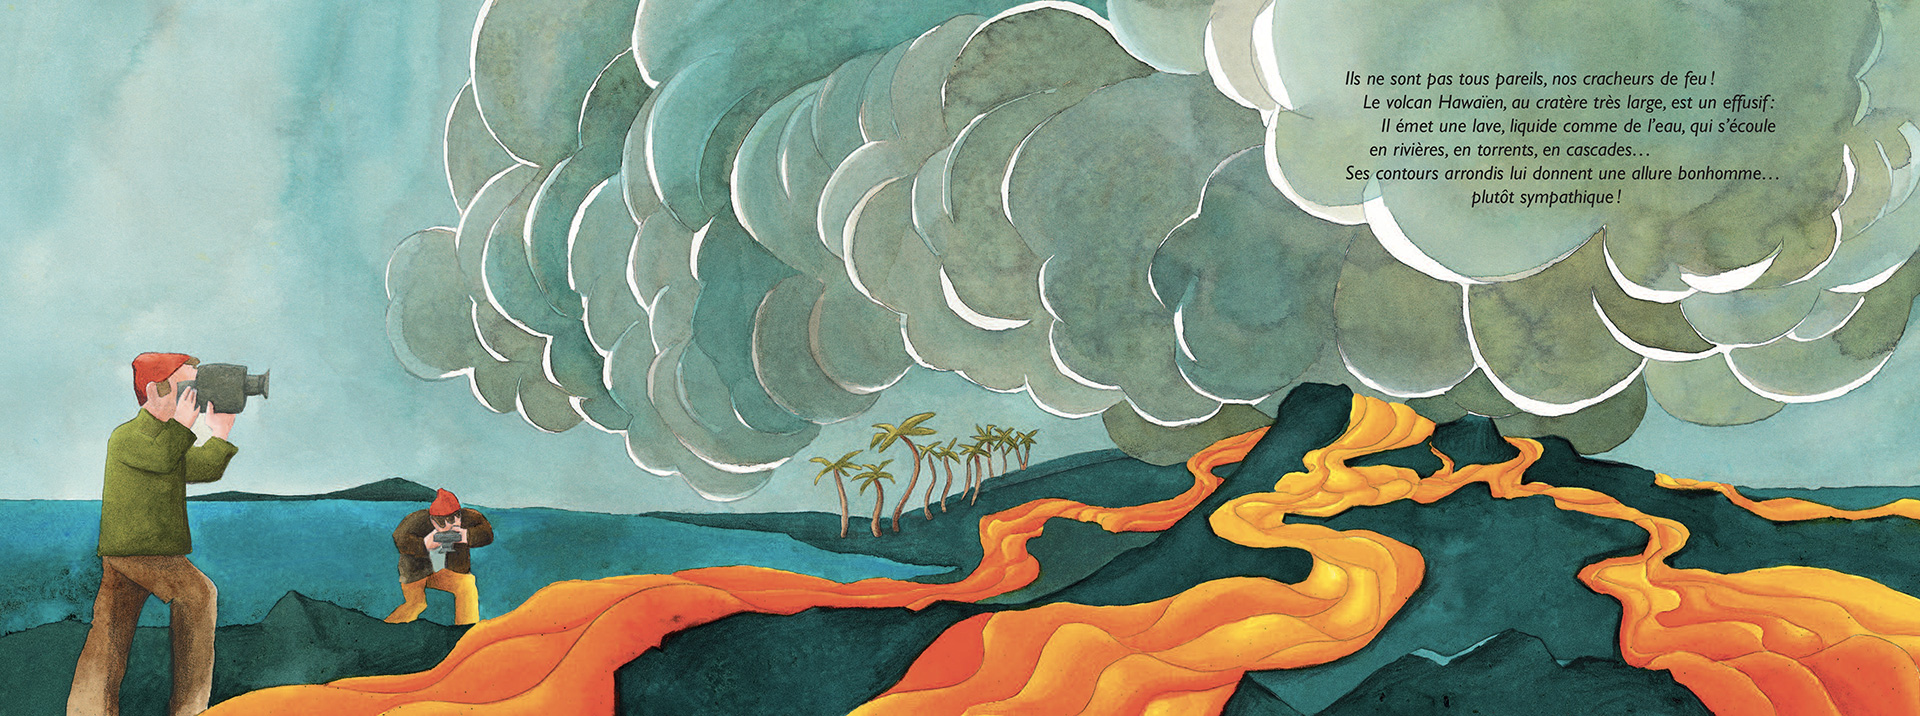 Chauds Les Volcans ! : Le Volcanisme